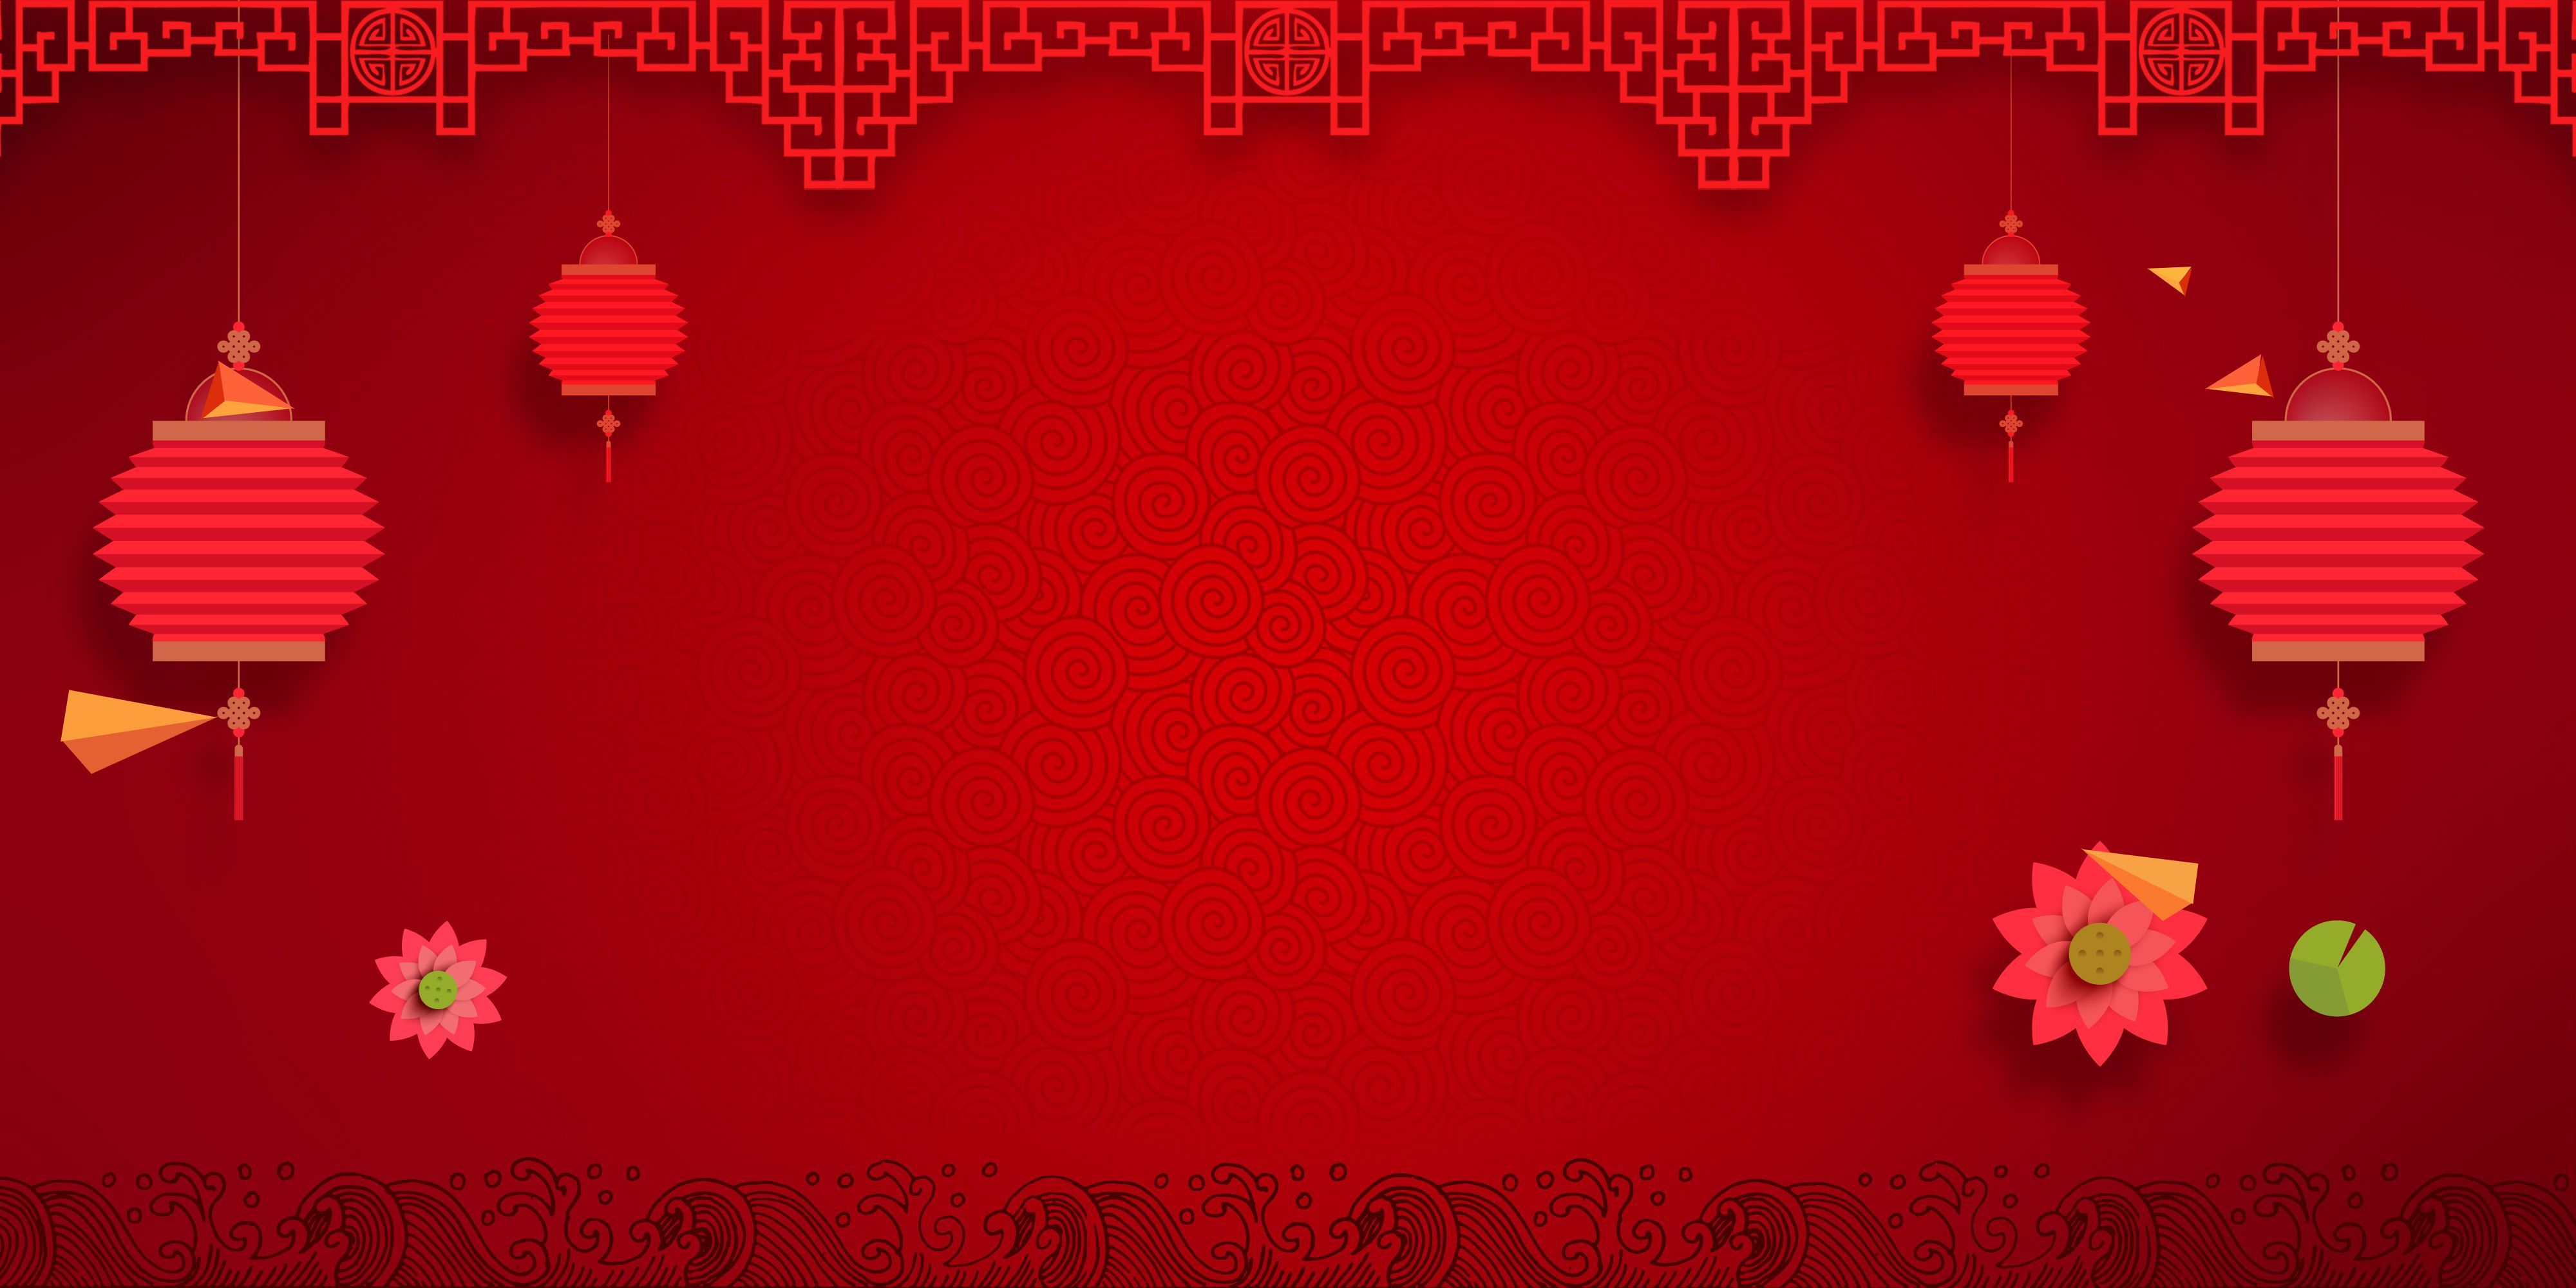 Một background đỏ Tết đơn giản nhưng ấm áp và đậm chất truyền thống chỉ đợi bạn khám phá.